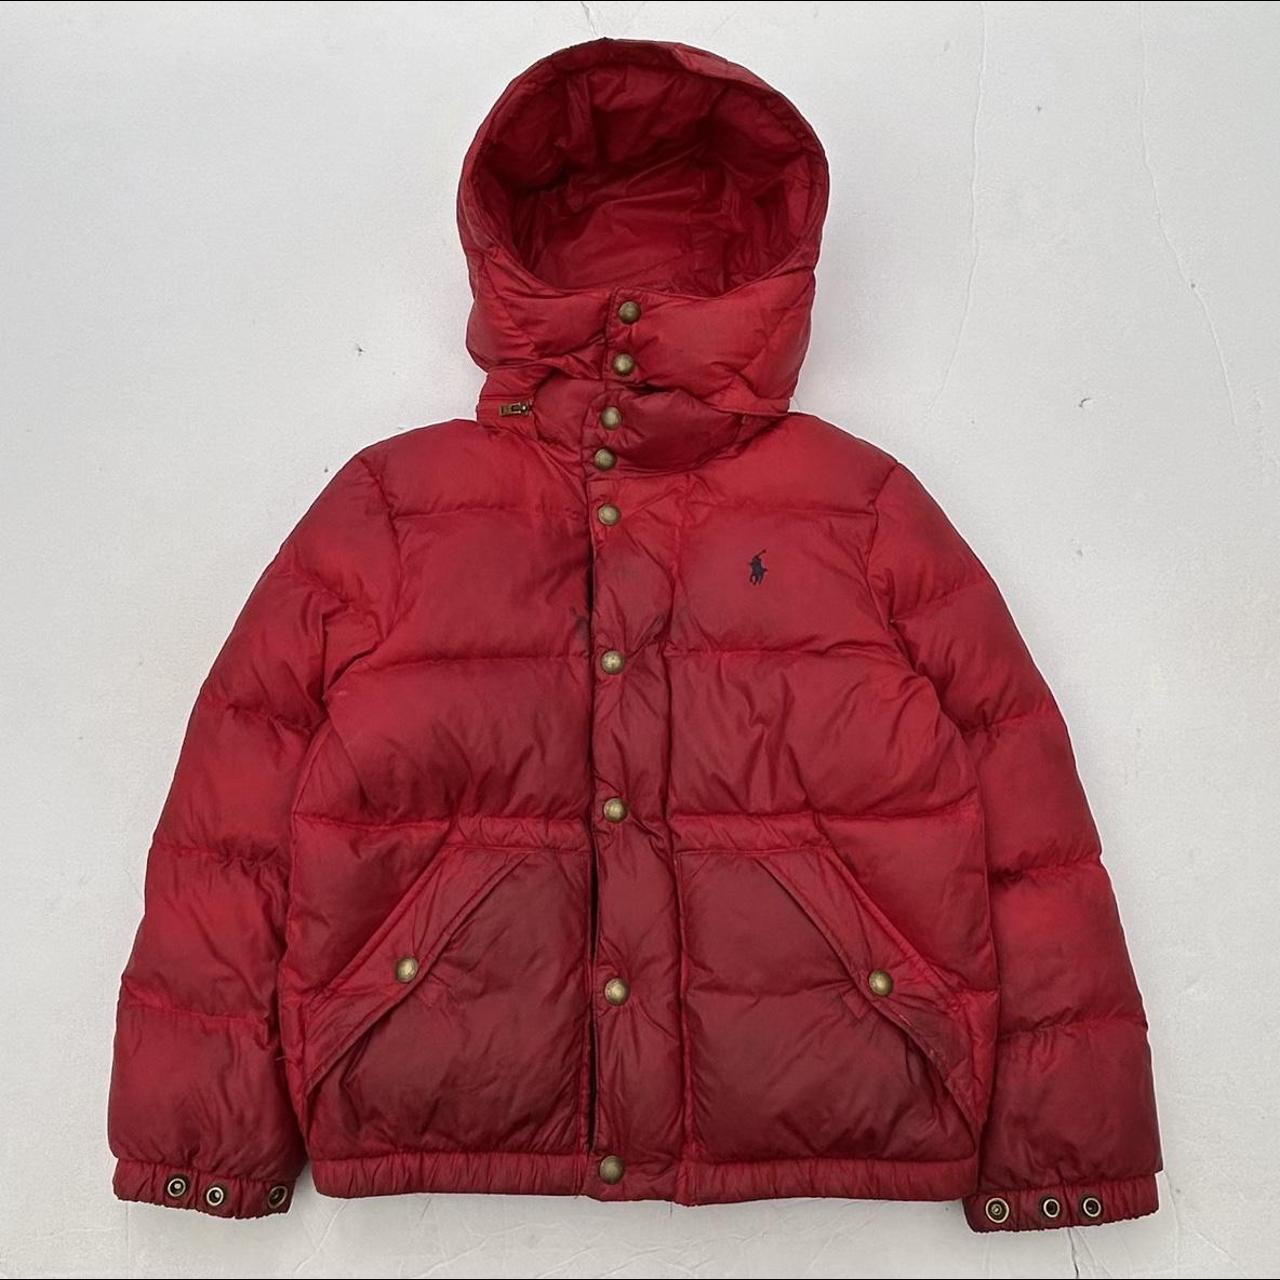 Polo Ralph Lauren Red Jacket | Depop